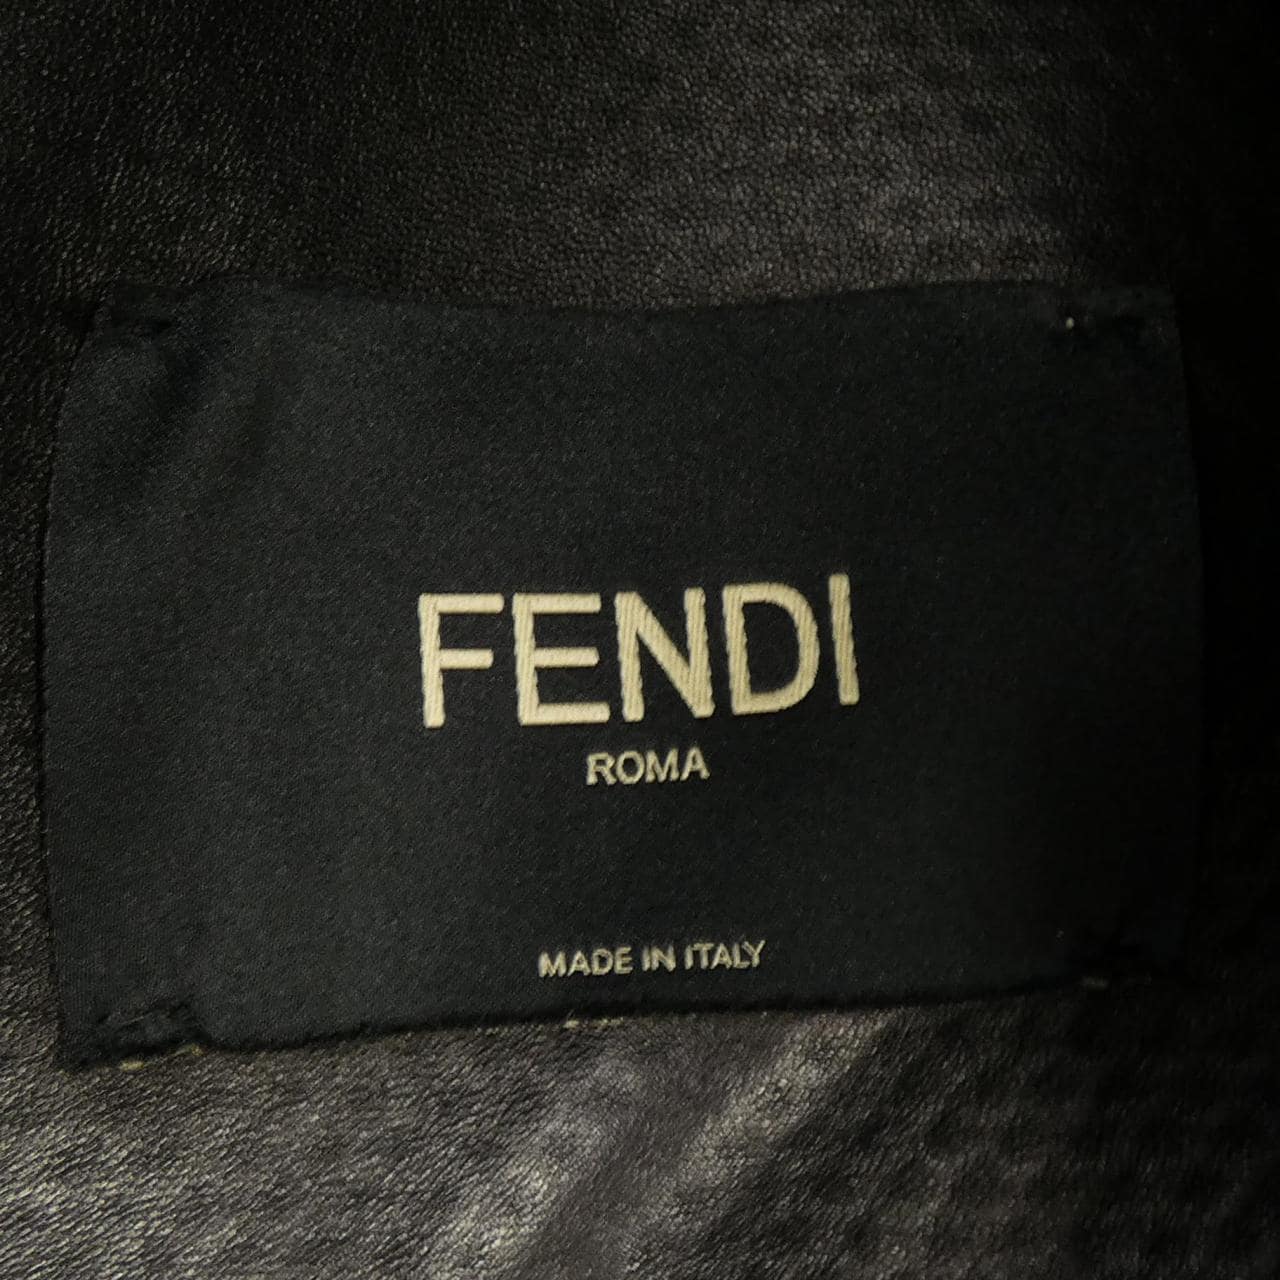 FENDI leather jacket